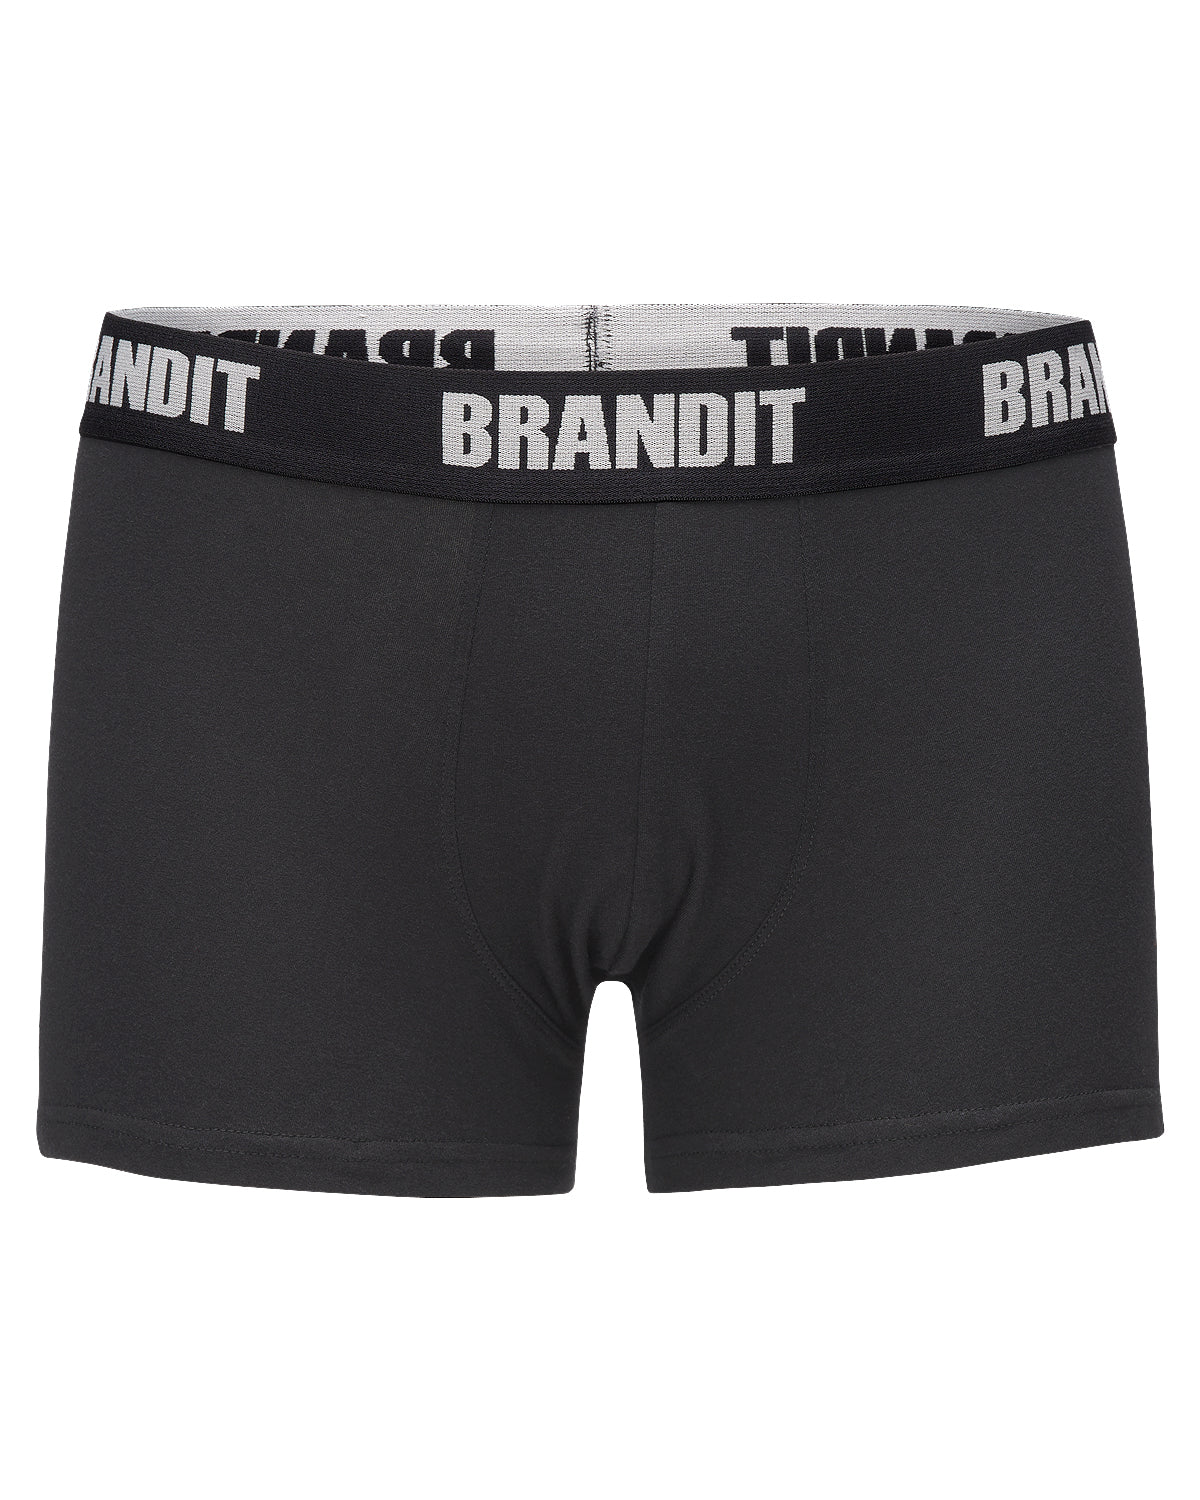 Brandit Brandit logo bokserit 2-pack - Musta & Musta